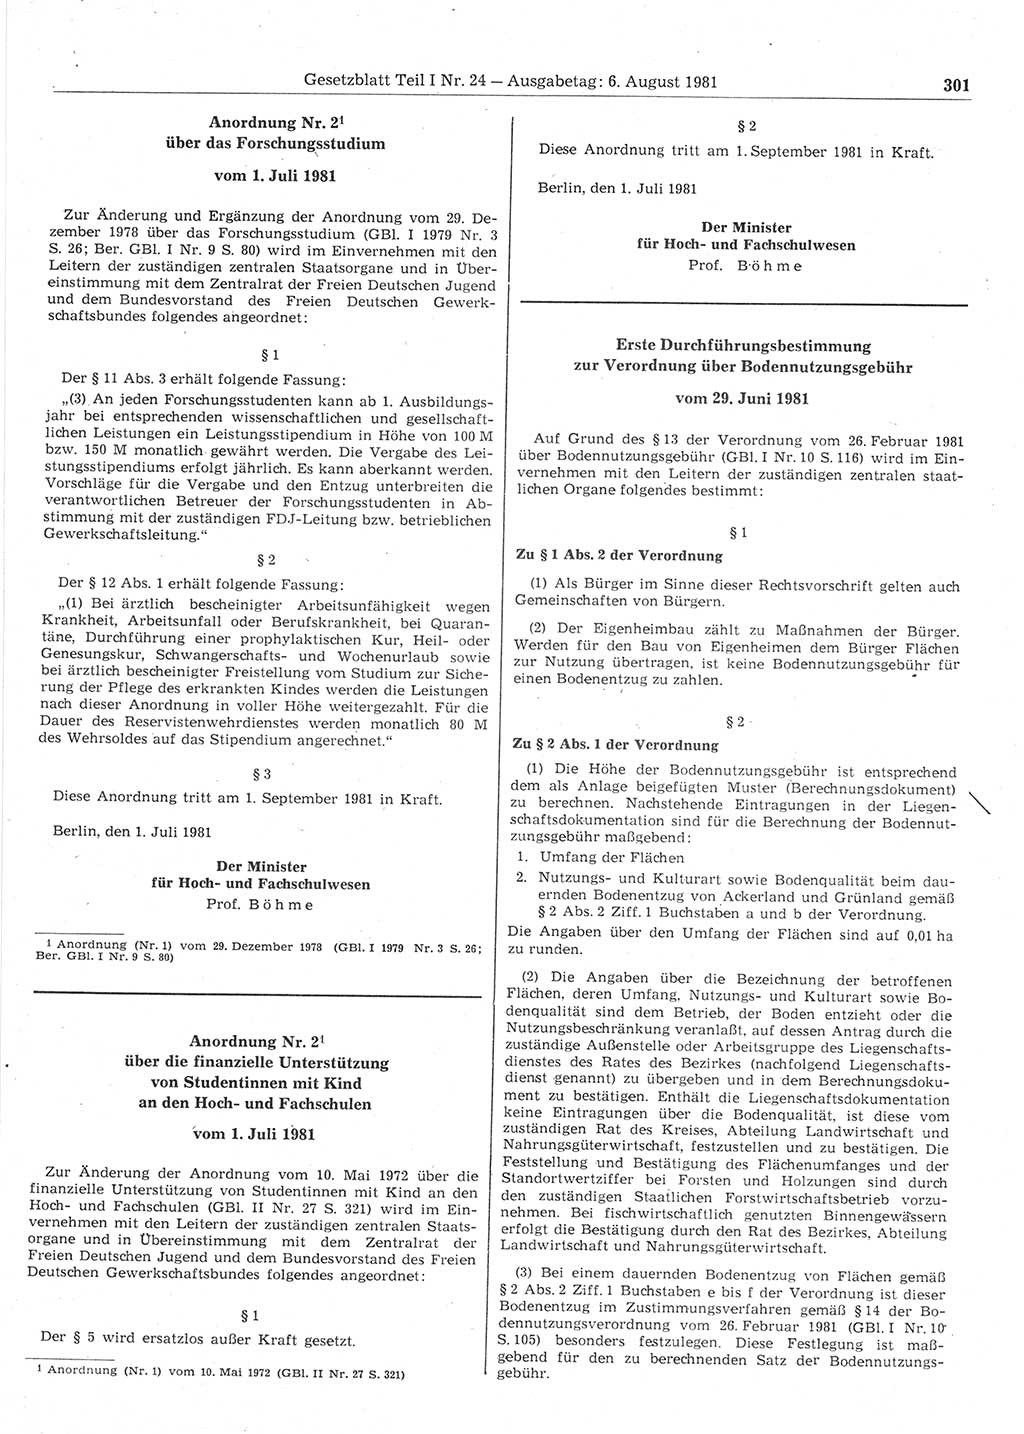 Gesetzblatt (GBl.) der Deutschen Demokratischen Republik (DDR) Teil Ⅰ 1981, Seite 301 (GBl. DDR Ⅰ 1981, S. 301)